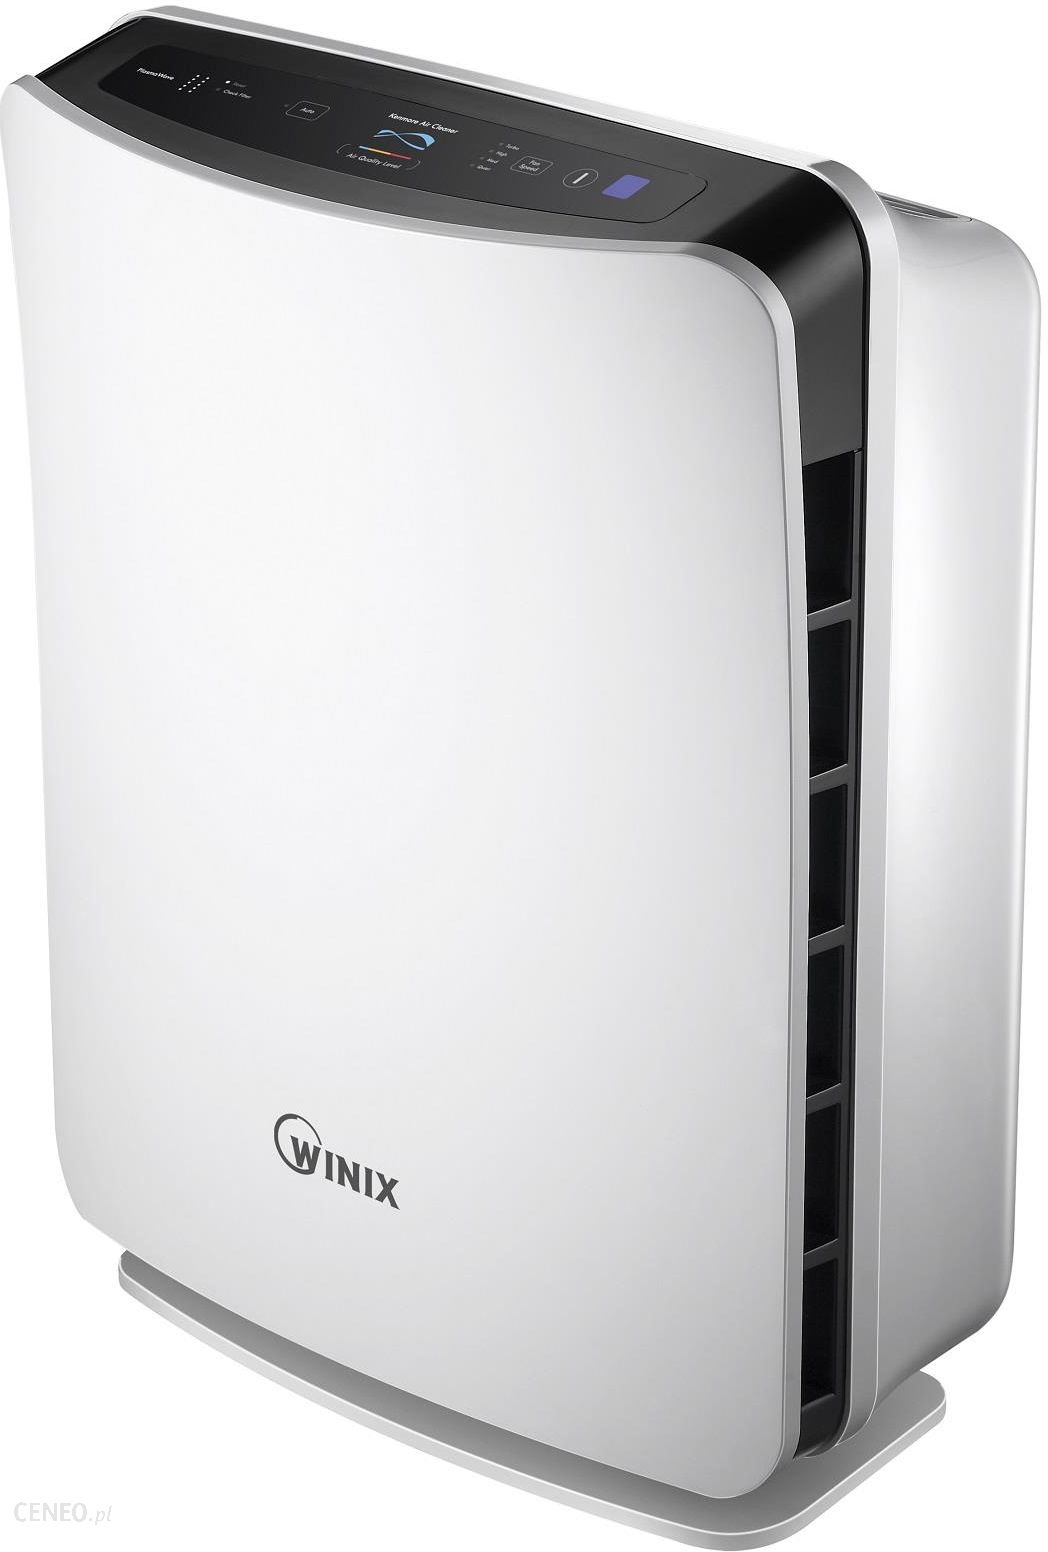 Oczyszczacz powietrza Winix P300 - opinie, ceny na Ceneo.pl